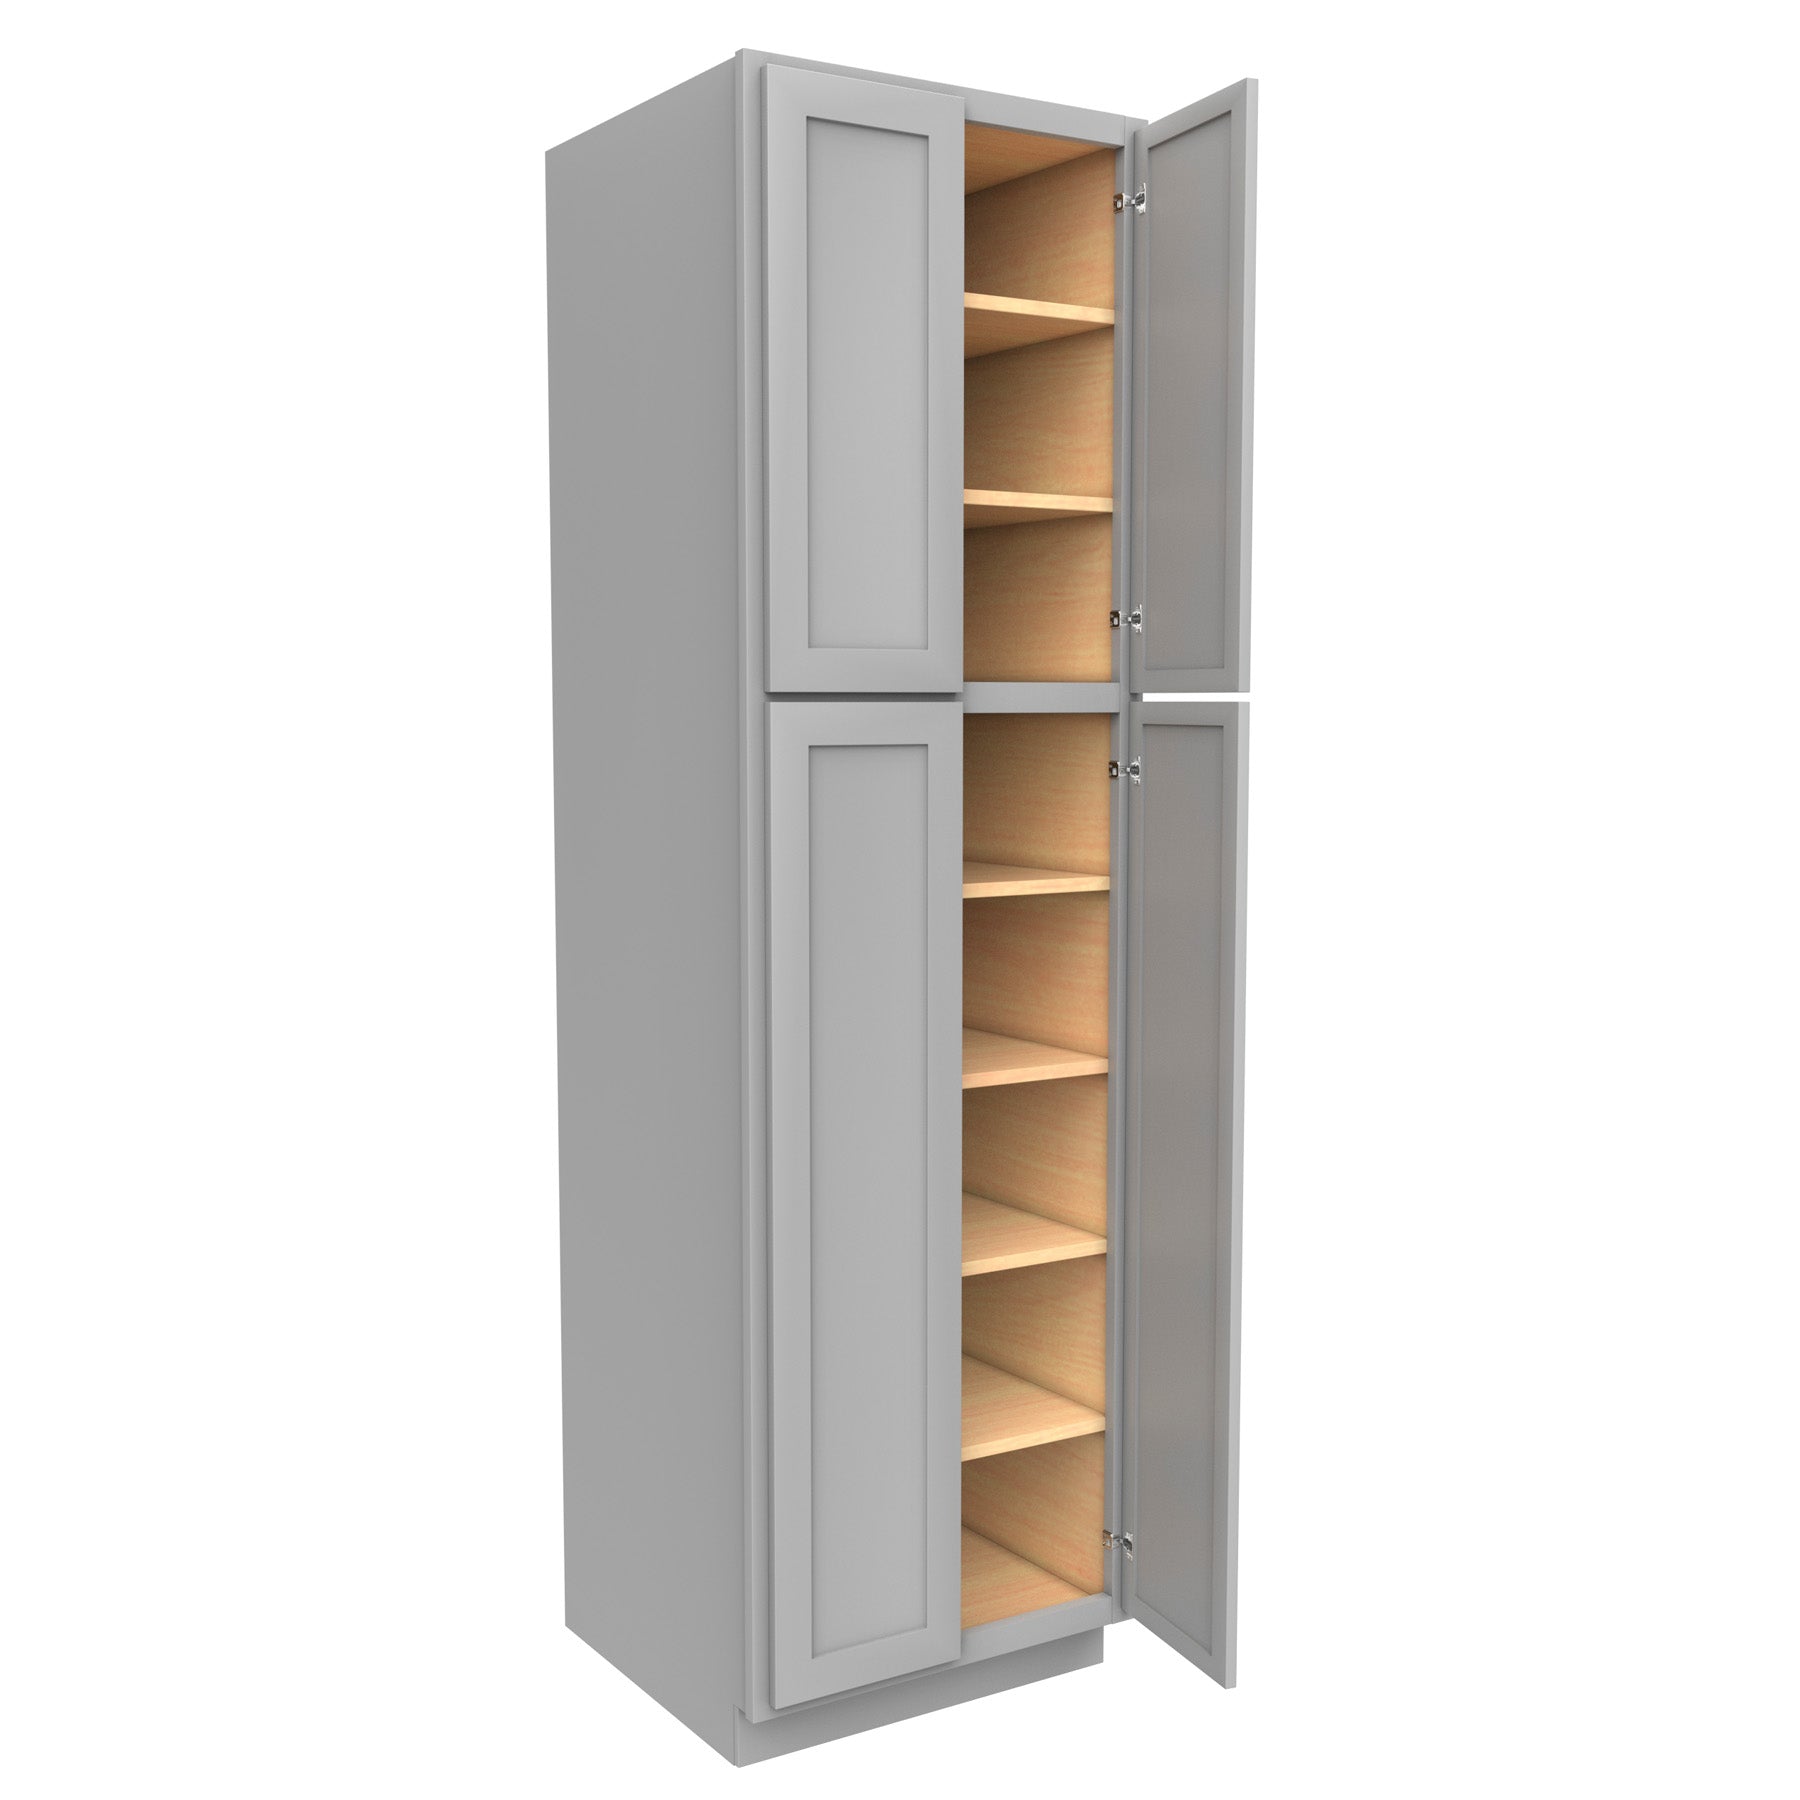 Elegant Dove - Double Door Utility Cabinet | 24"W x 84"H x 24"D